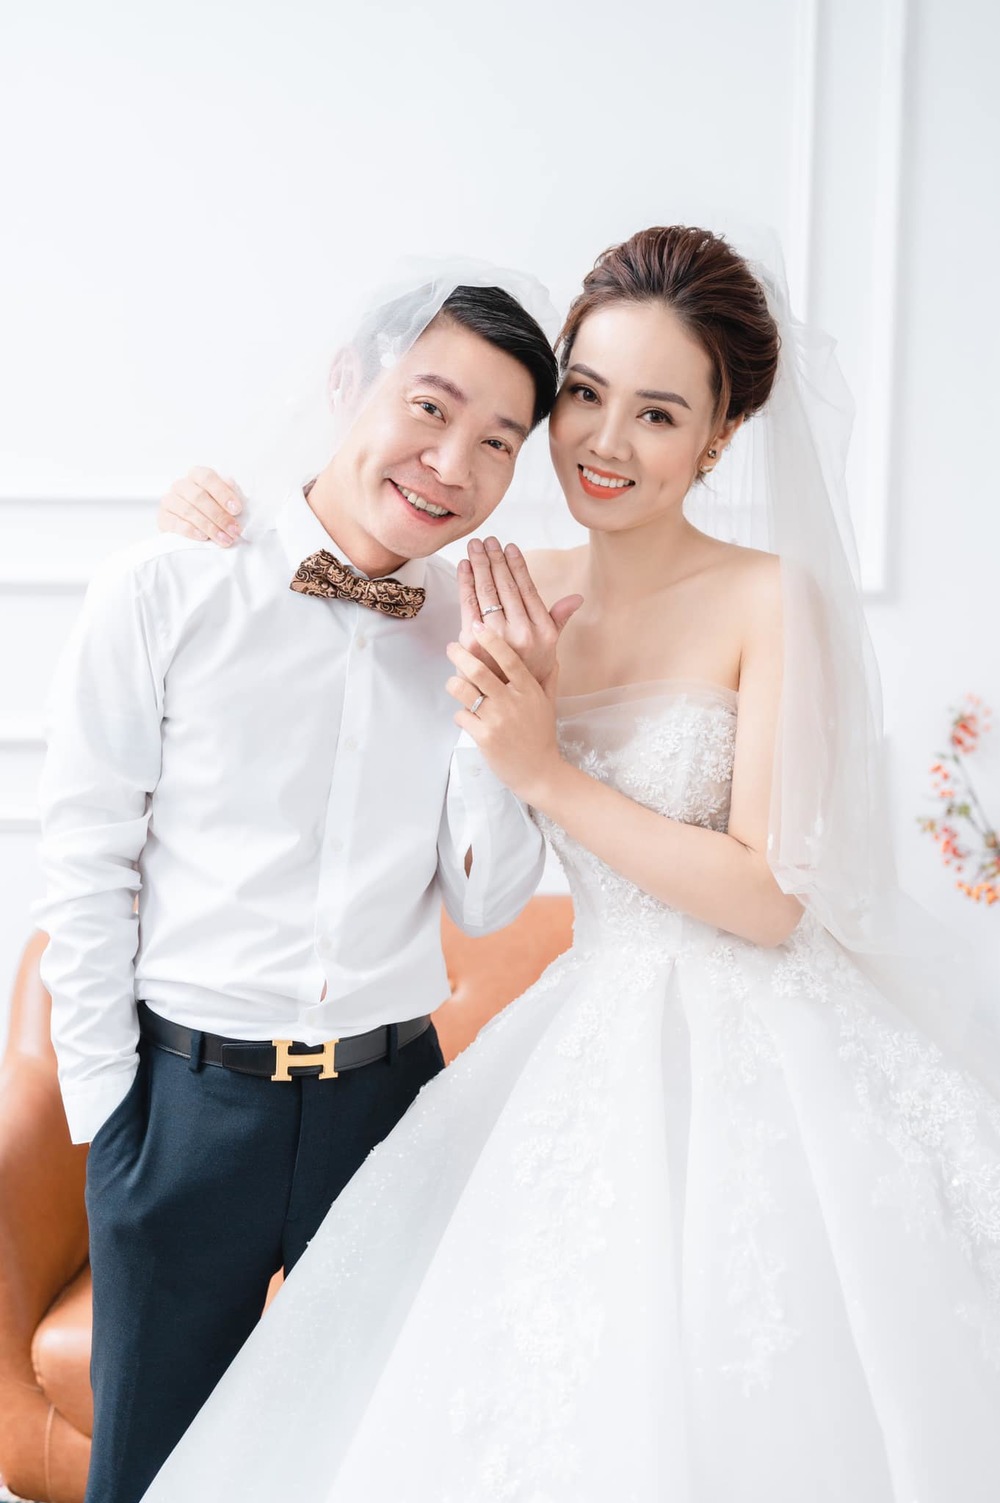  
Công Lý và vợ kém 15 tuổi kết hôn từ đầu năm 2021. (Ảnh: FB Nguyễn Công Lý)